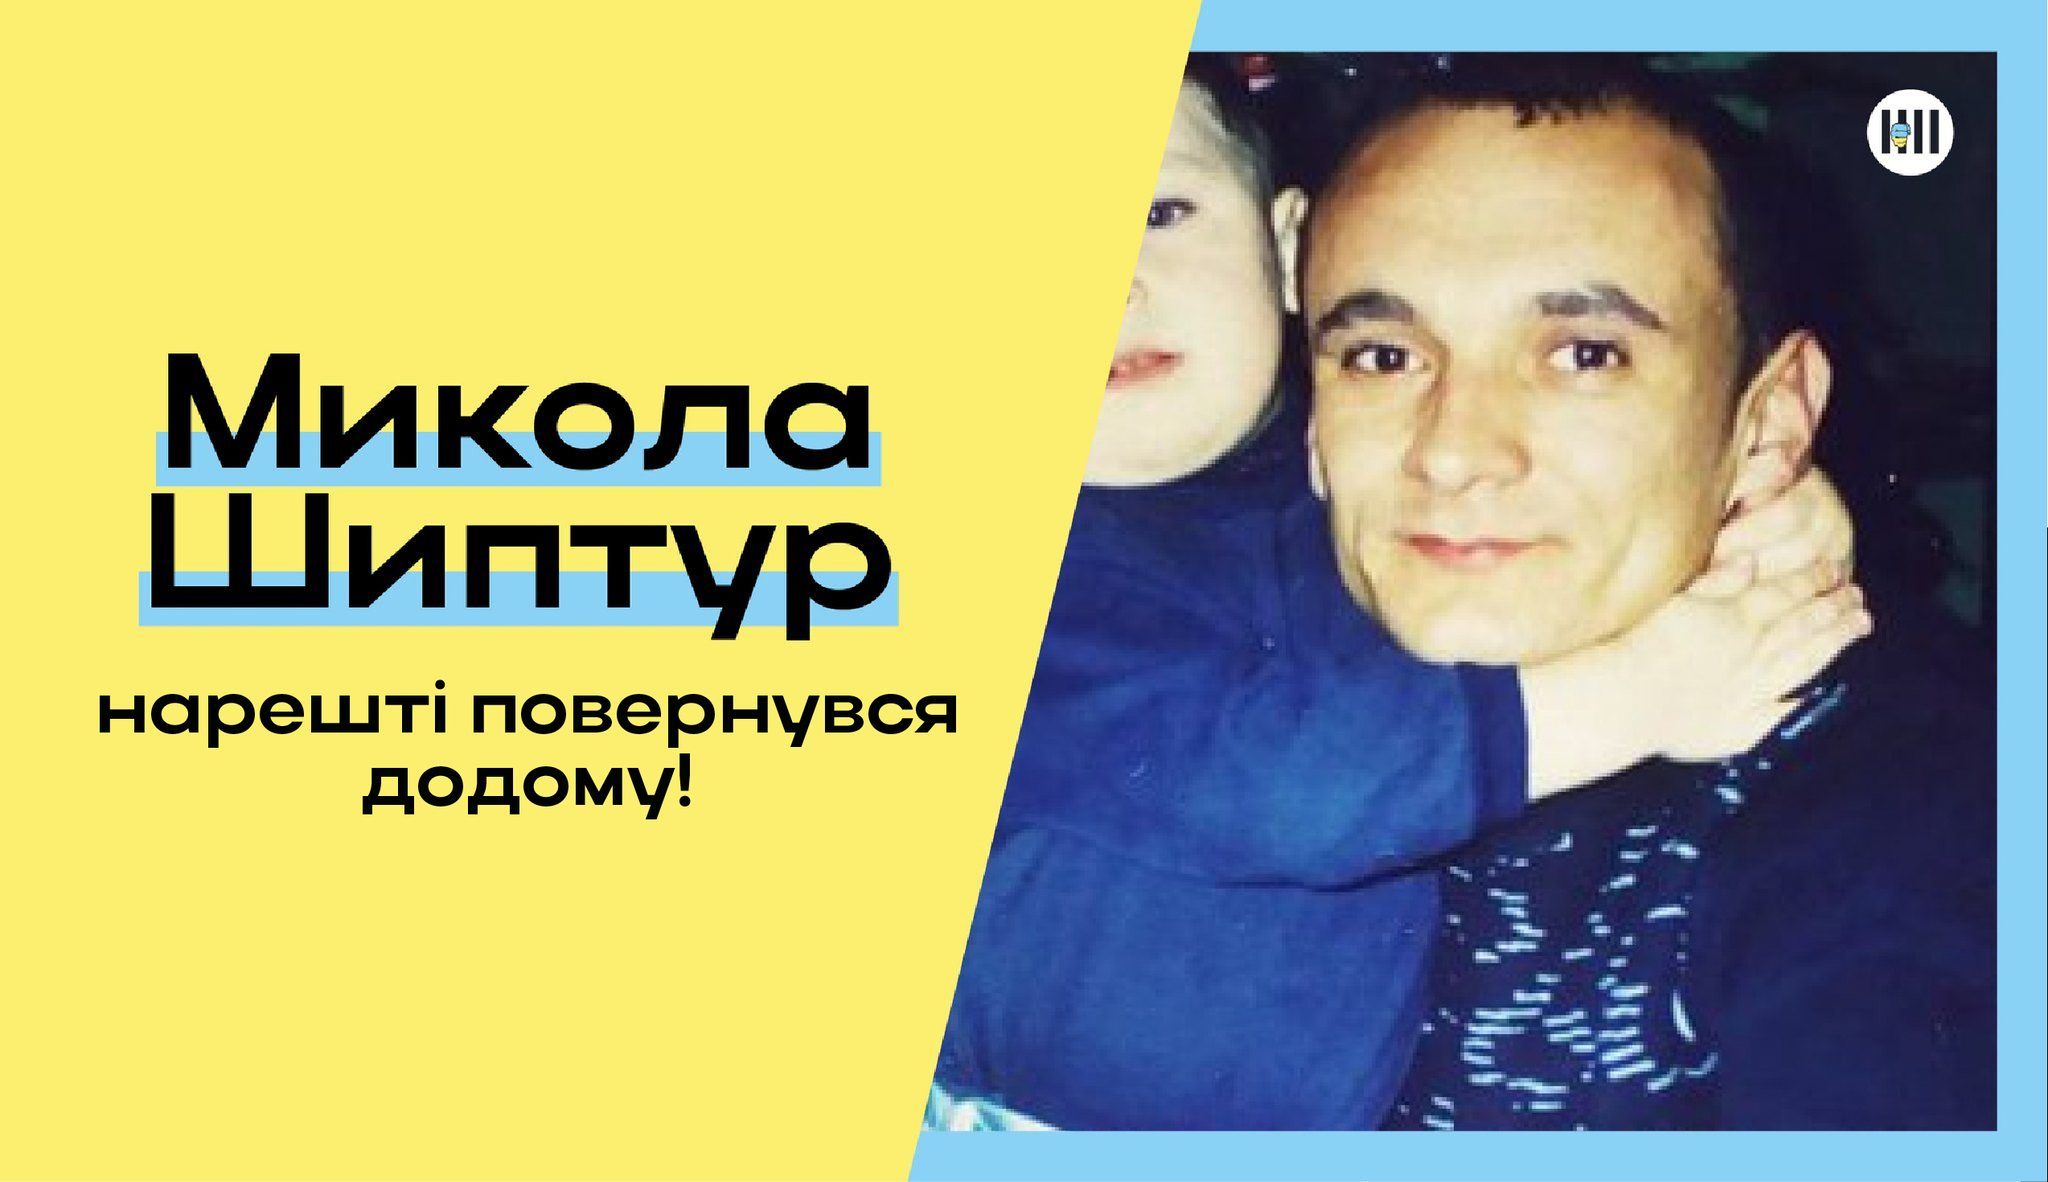 Після звільнення у березні цього року Микола Шиптур лише зараз зміг потрапити додому.